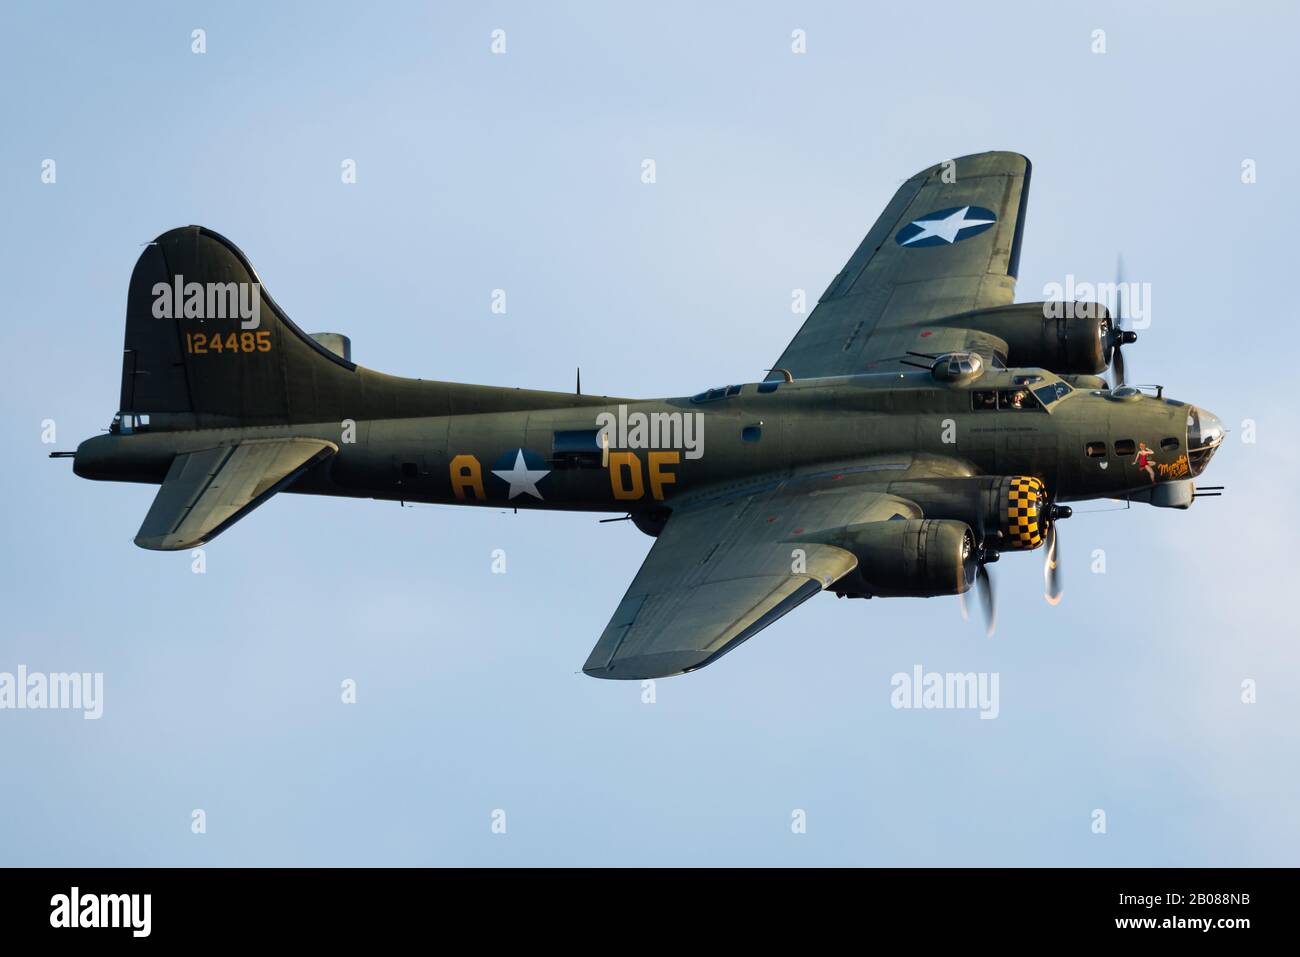 Der schöne schwere Bomber Boeing B-17 Flying Fortress 'Sally B' wurde in den 1930er Jahren für das United States Army Air Corps (USAAC) entwickelt. Stockfoto